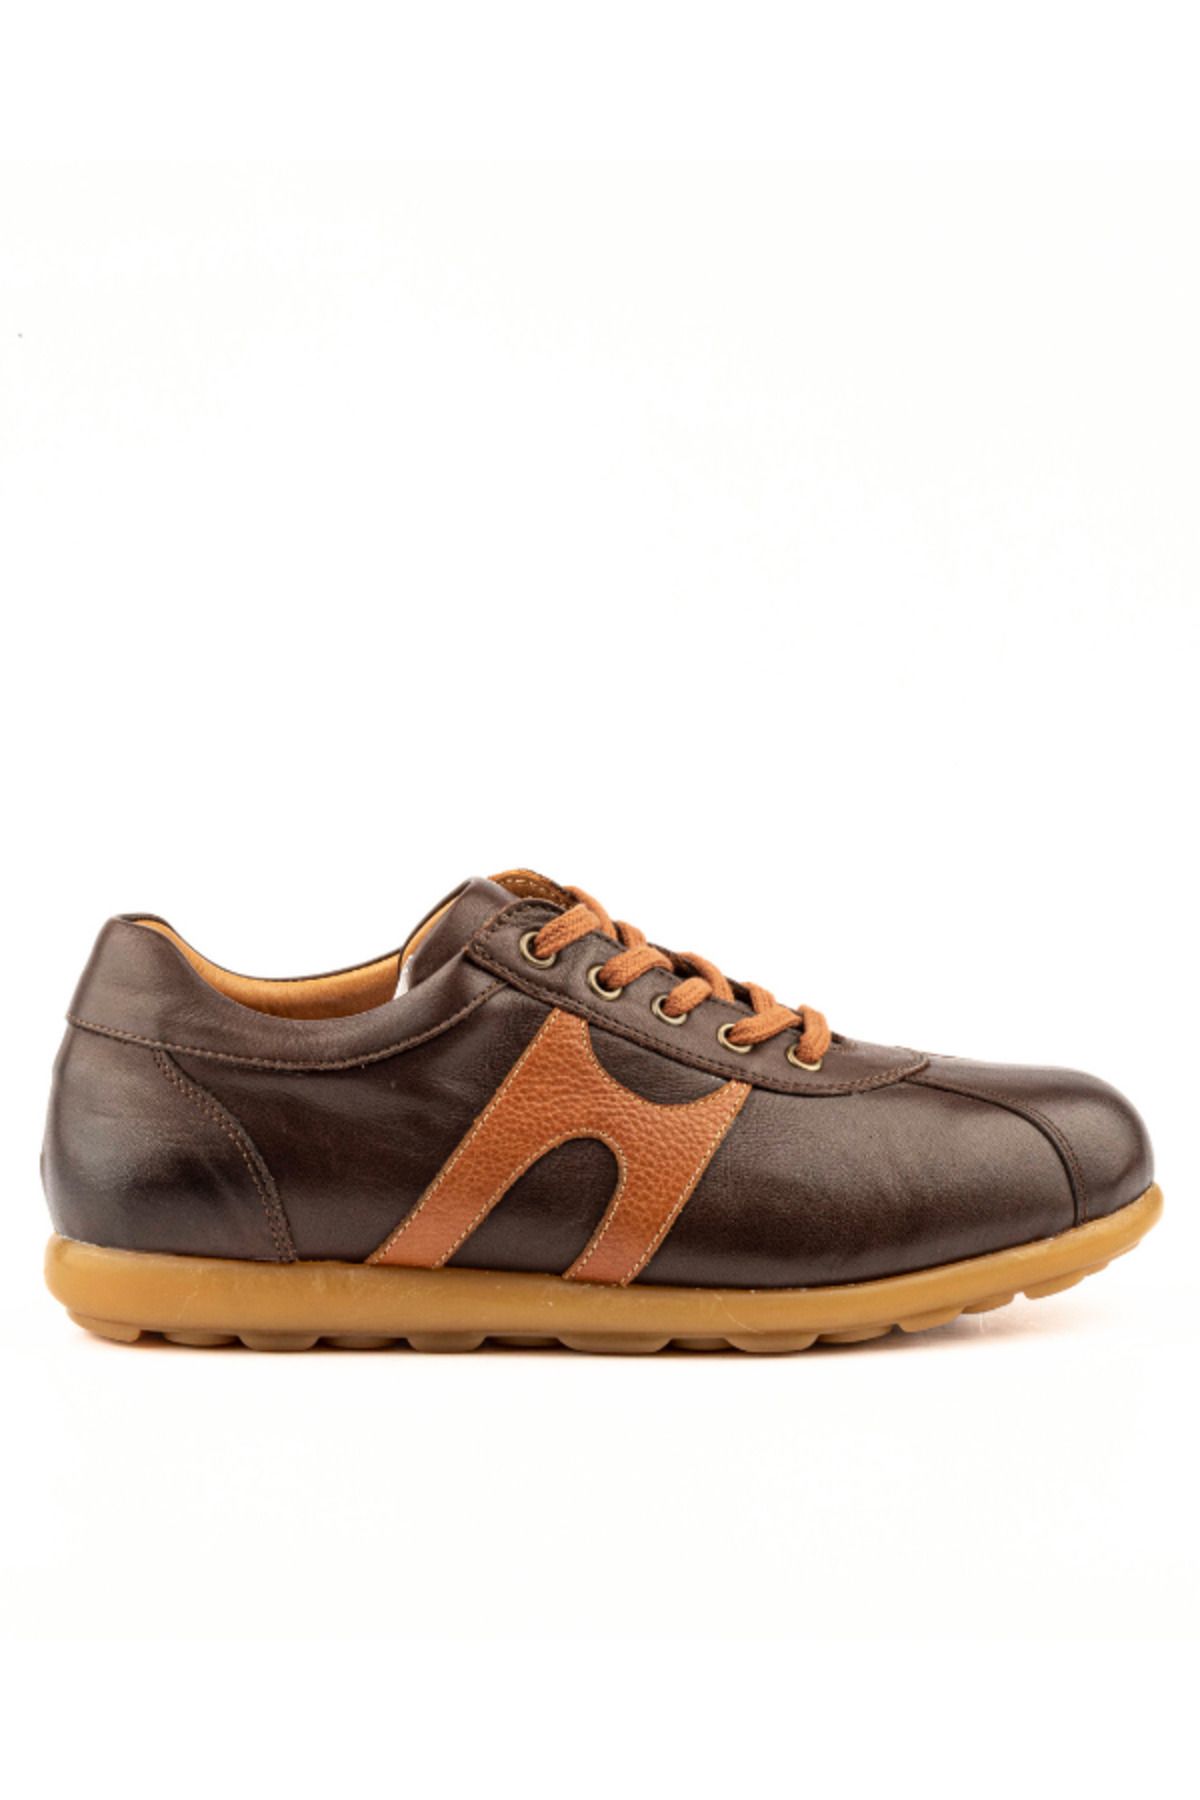 Riccardo Colli Hakiki Deri Konforlu Günlük Ayakkabı Özel Tasarım Konfor Taban Casual Kahverengi Ayakkabı